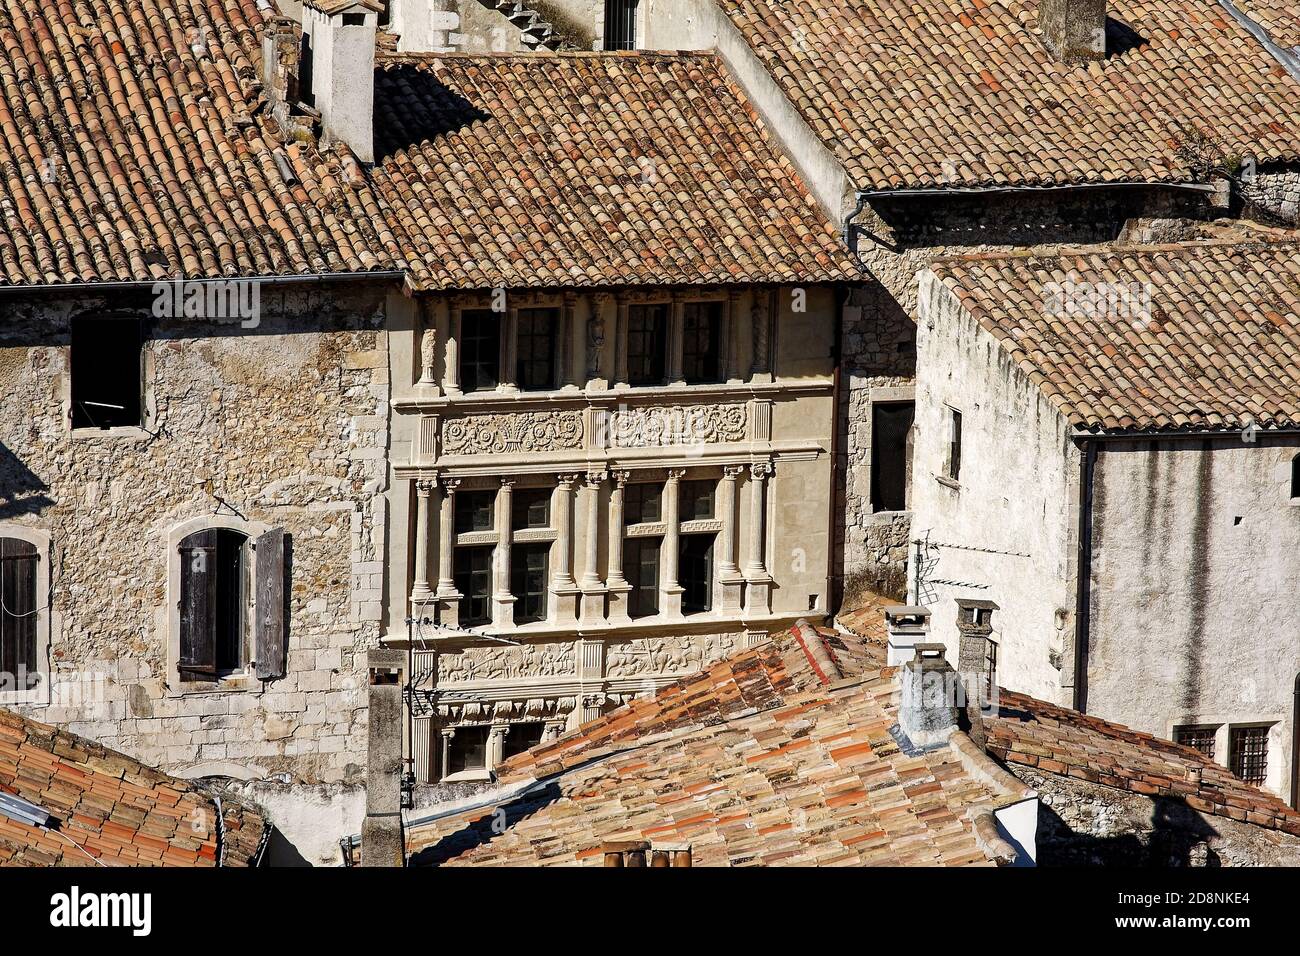 Panoramica degli edifici antichi, pietra, tetti in tegole, intagli ornati sulla facciata, strettamente impaccati insieme case, Viviers Francia; estate, orizzontale Foto Stock